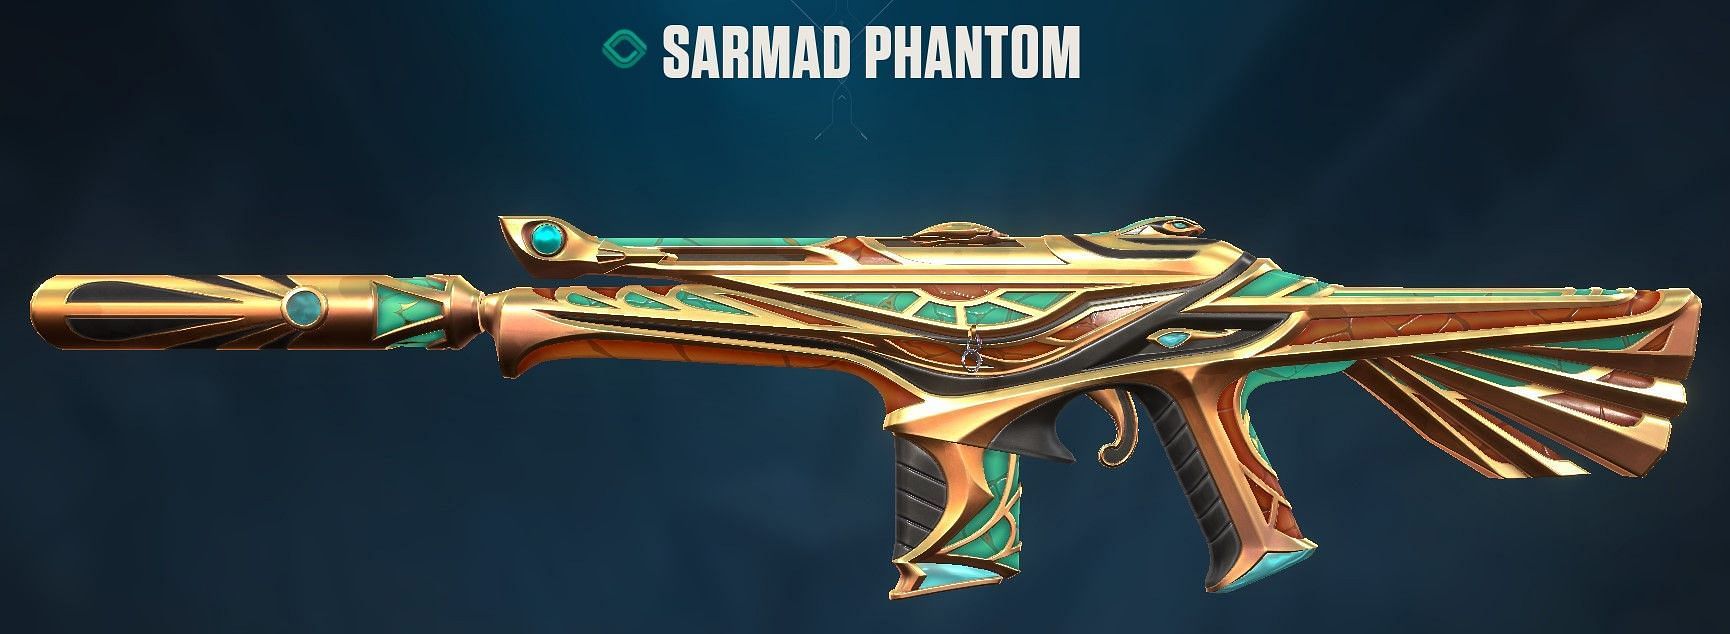 Sarmad Phantom (Image via Riot Games)